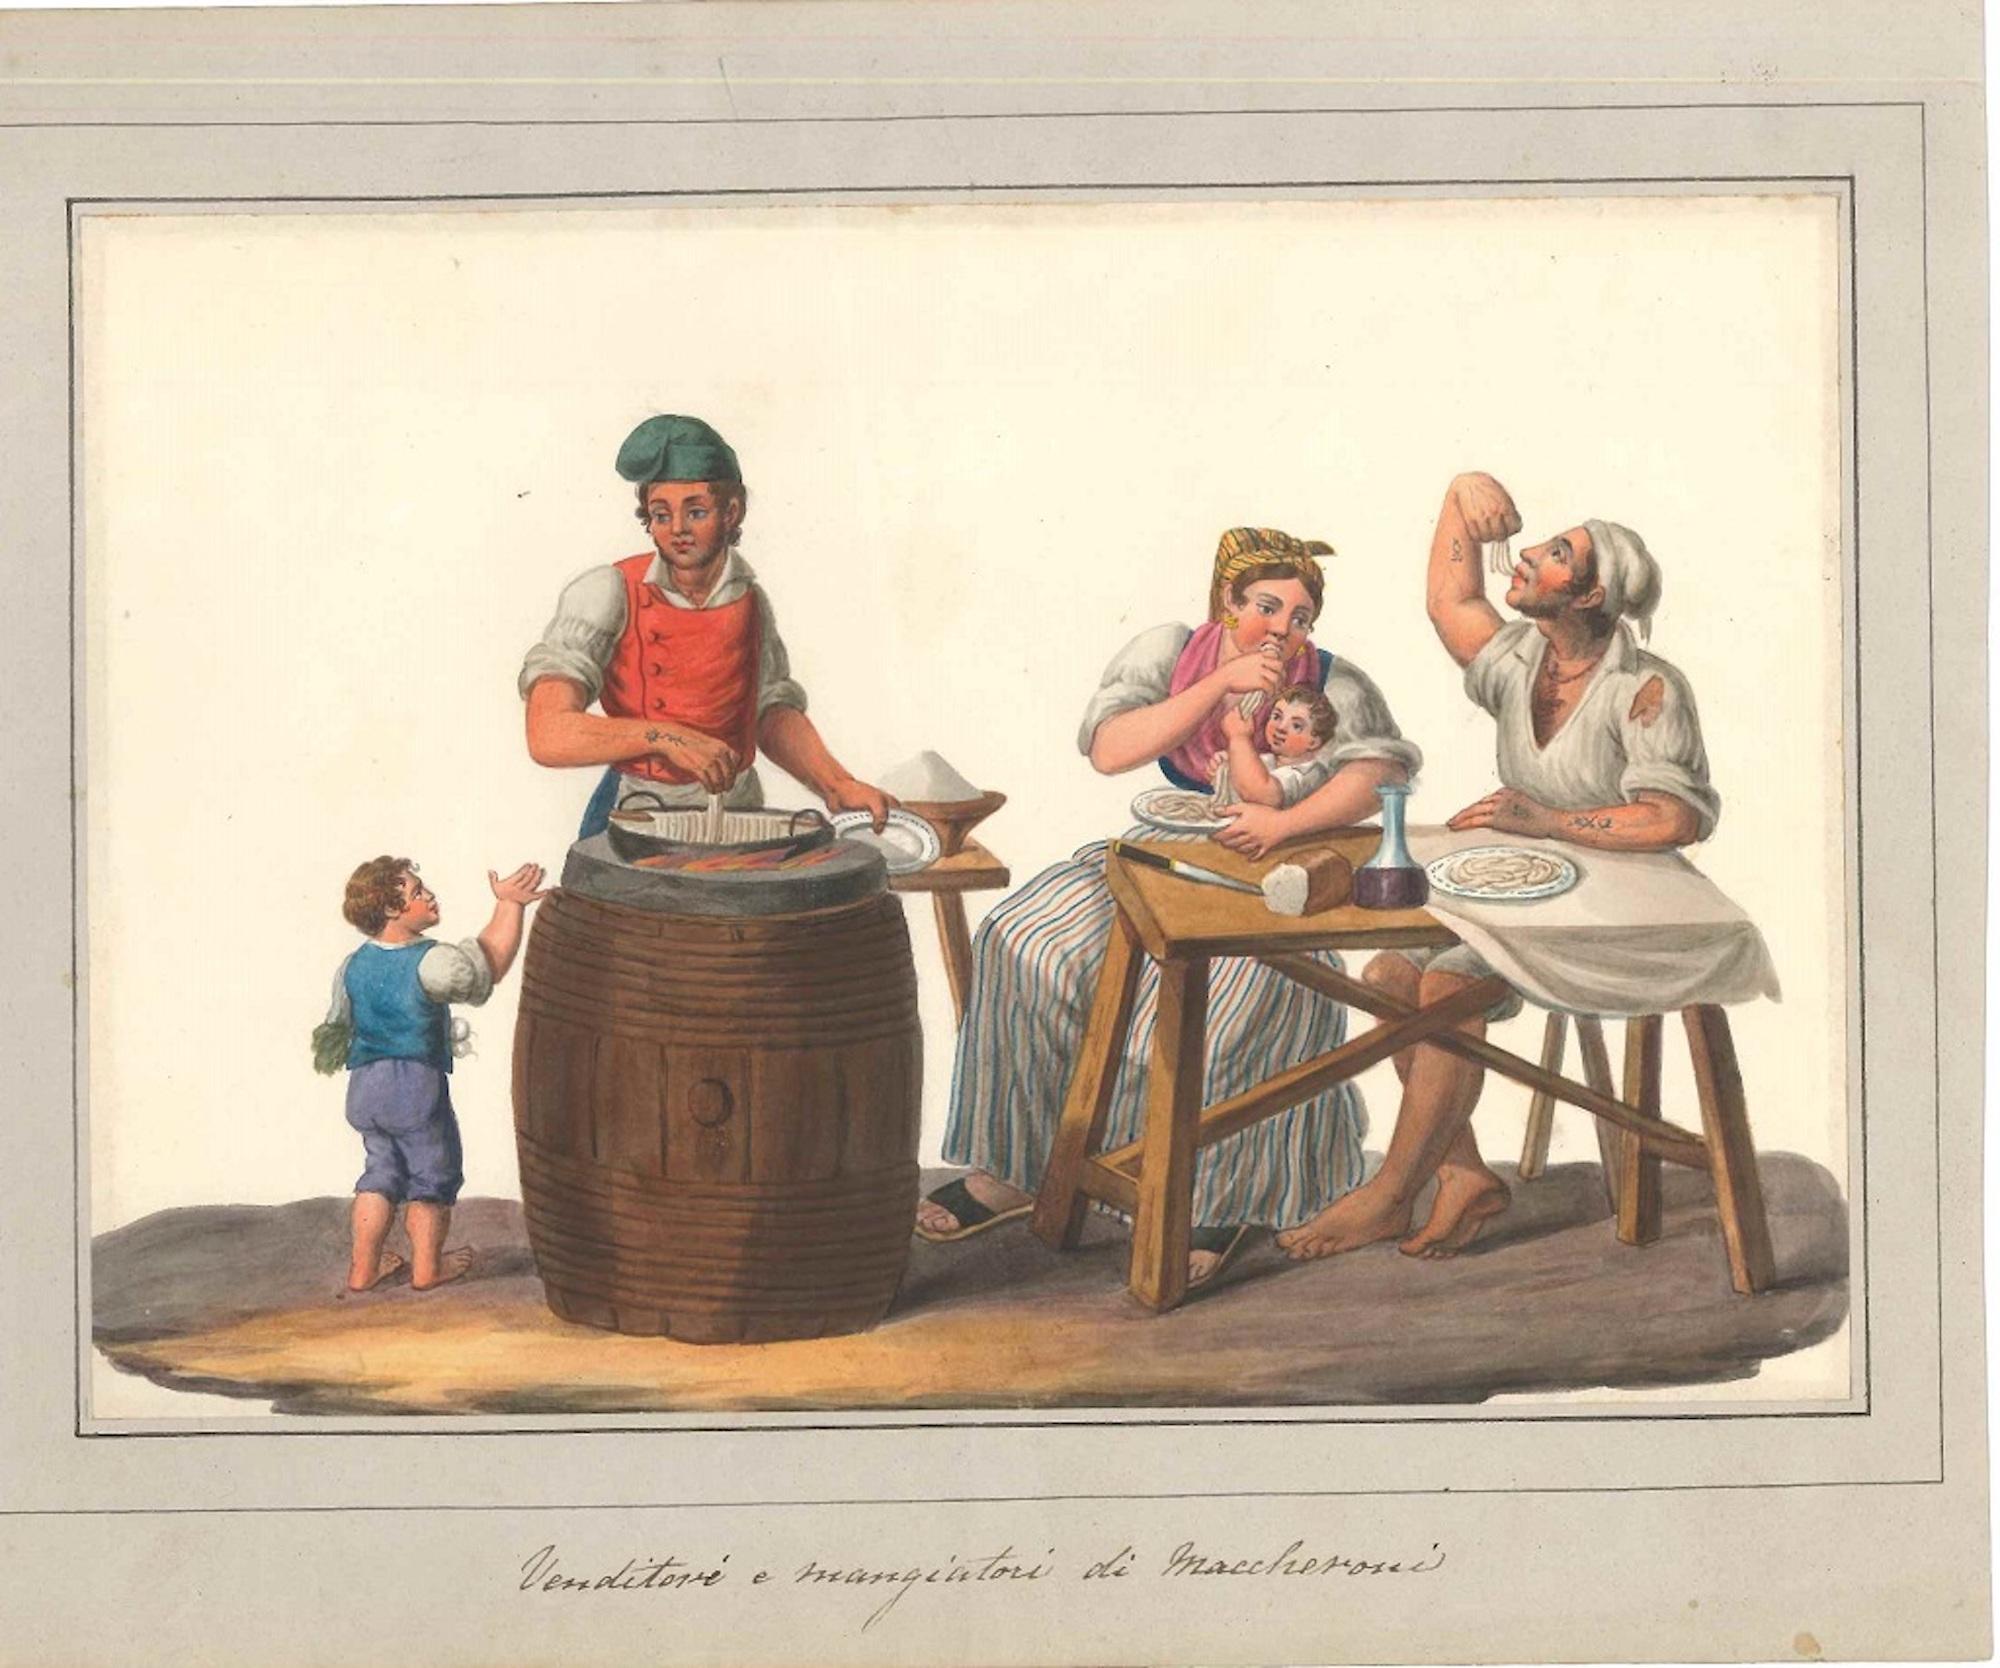 Venditori e Mangiatori di Maccheroni – Aquarell von M. De Vito – 1820, ca.